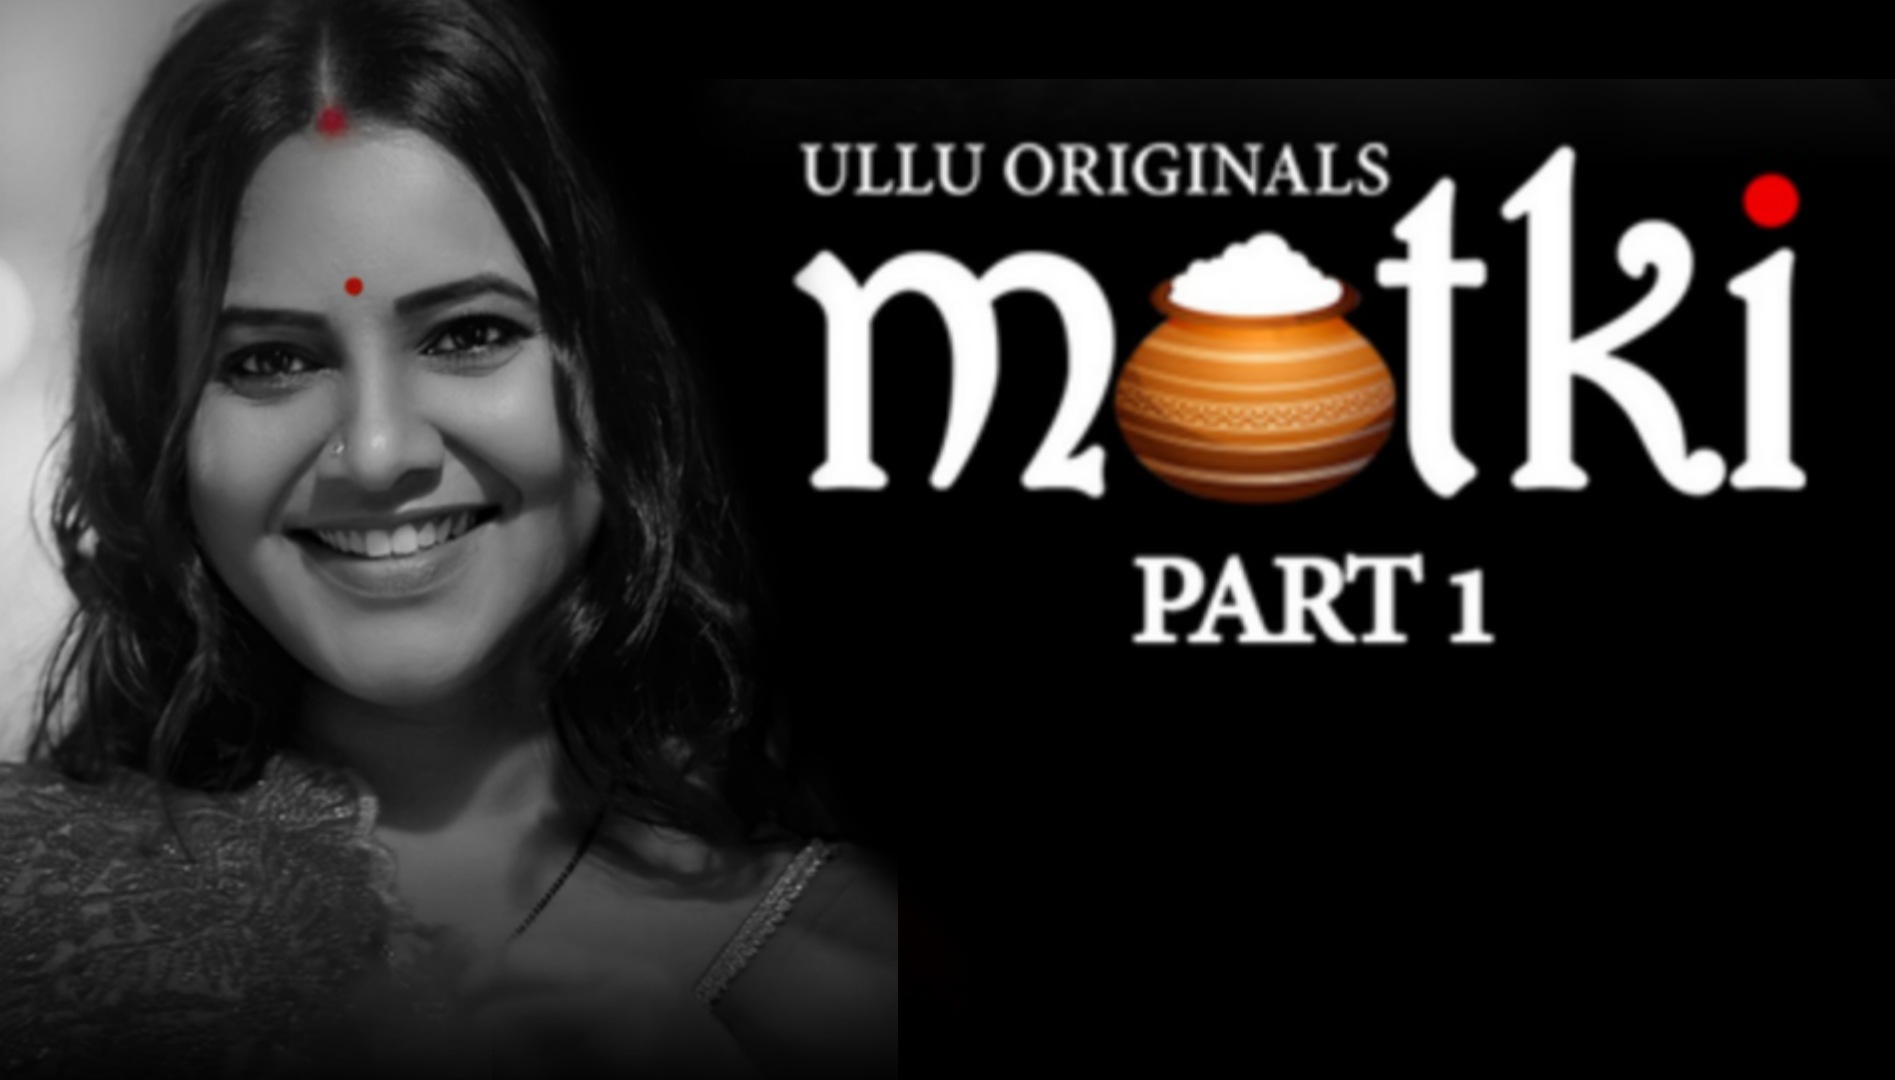 Matki Part 1 (2022) S01 Ullu Hot Web Series Download in 720P | 1080P